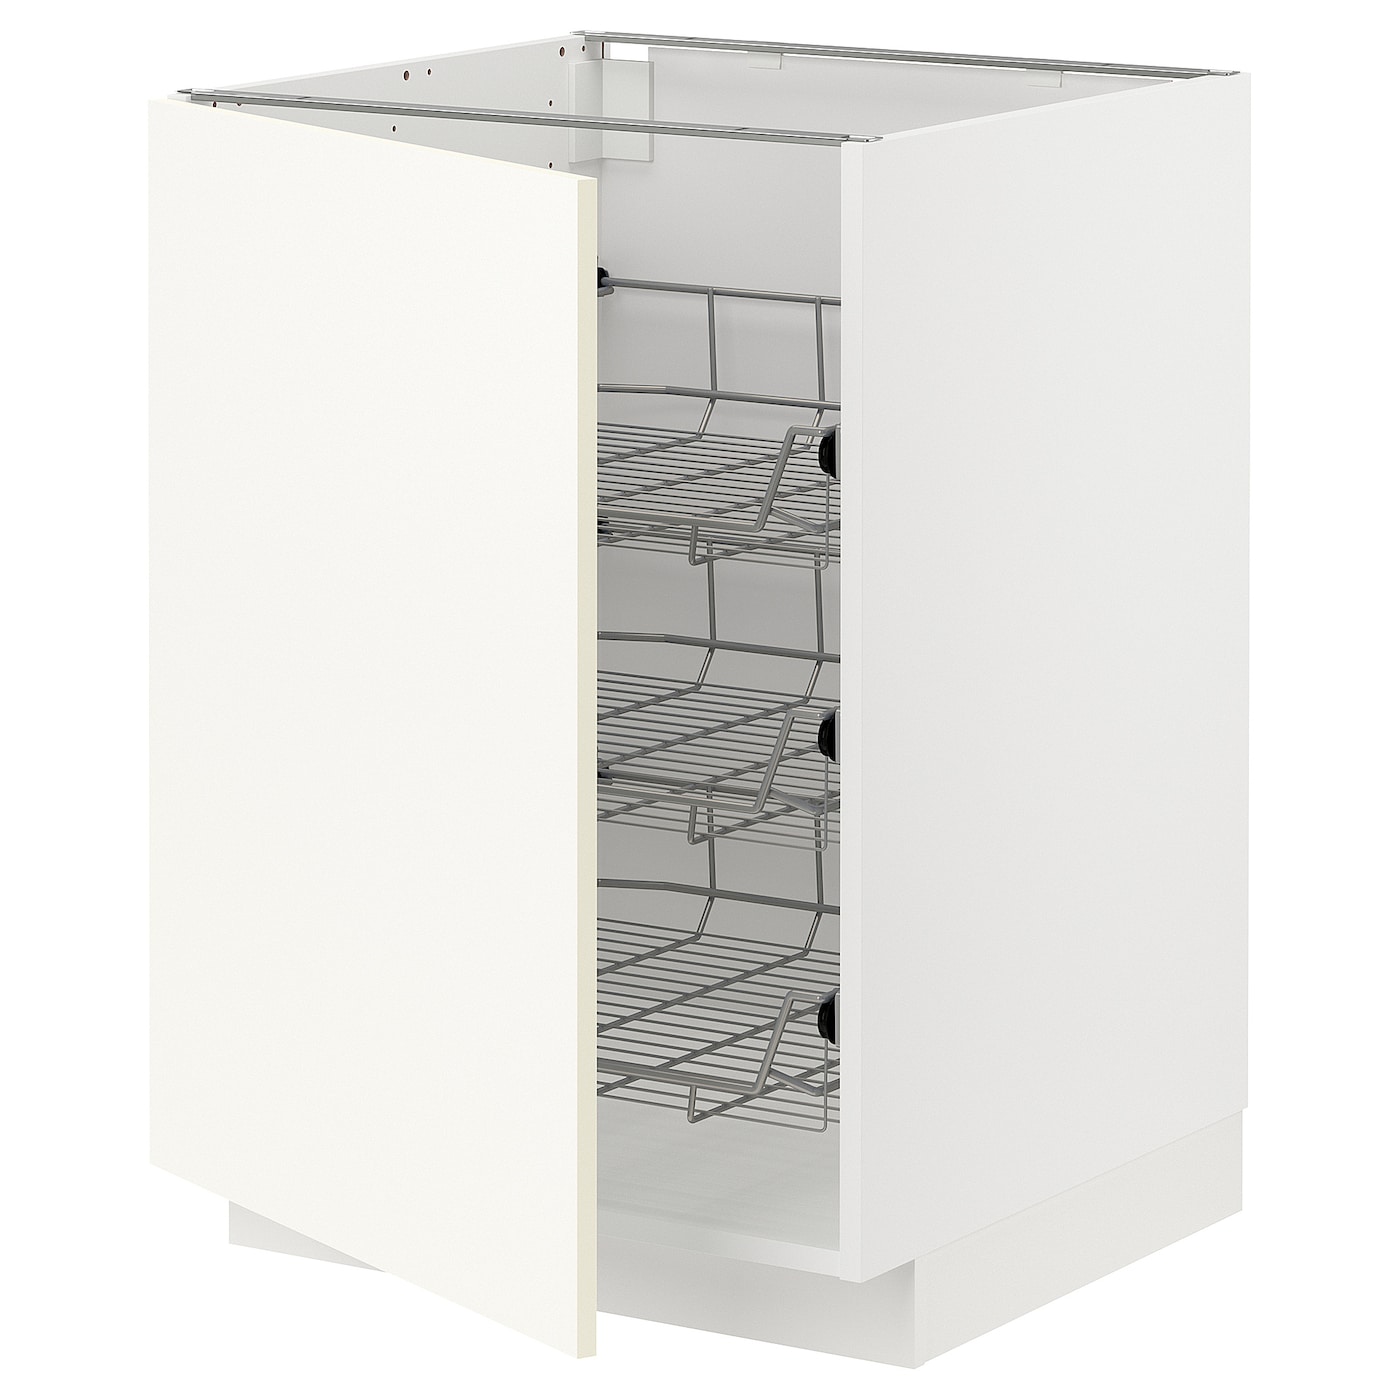 Напольный шкаф - IKEA METOD, 88x62x60см, белый, МЕТОД ИКЕА